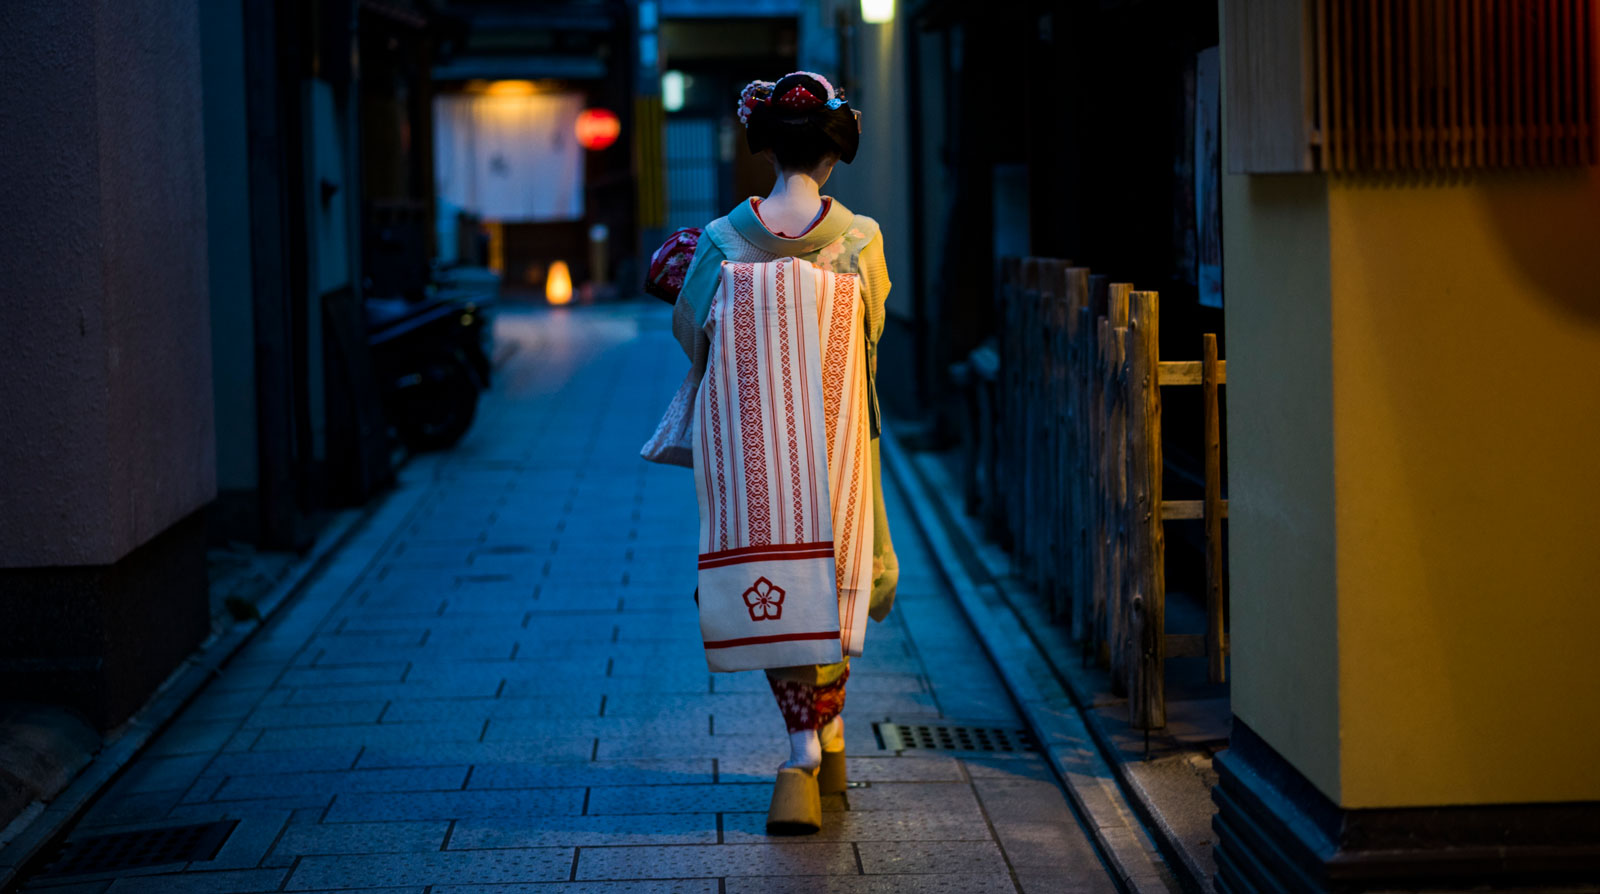 geisha o maiko de espaldas paseando por una calle a oscuras